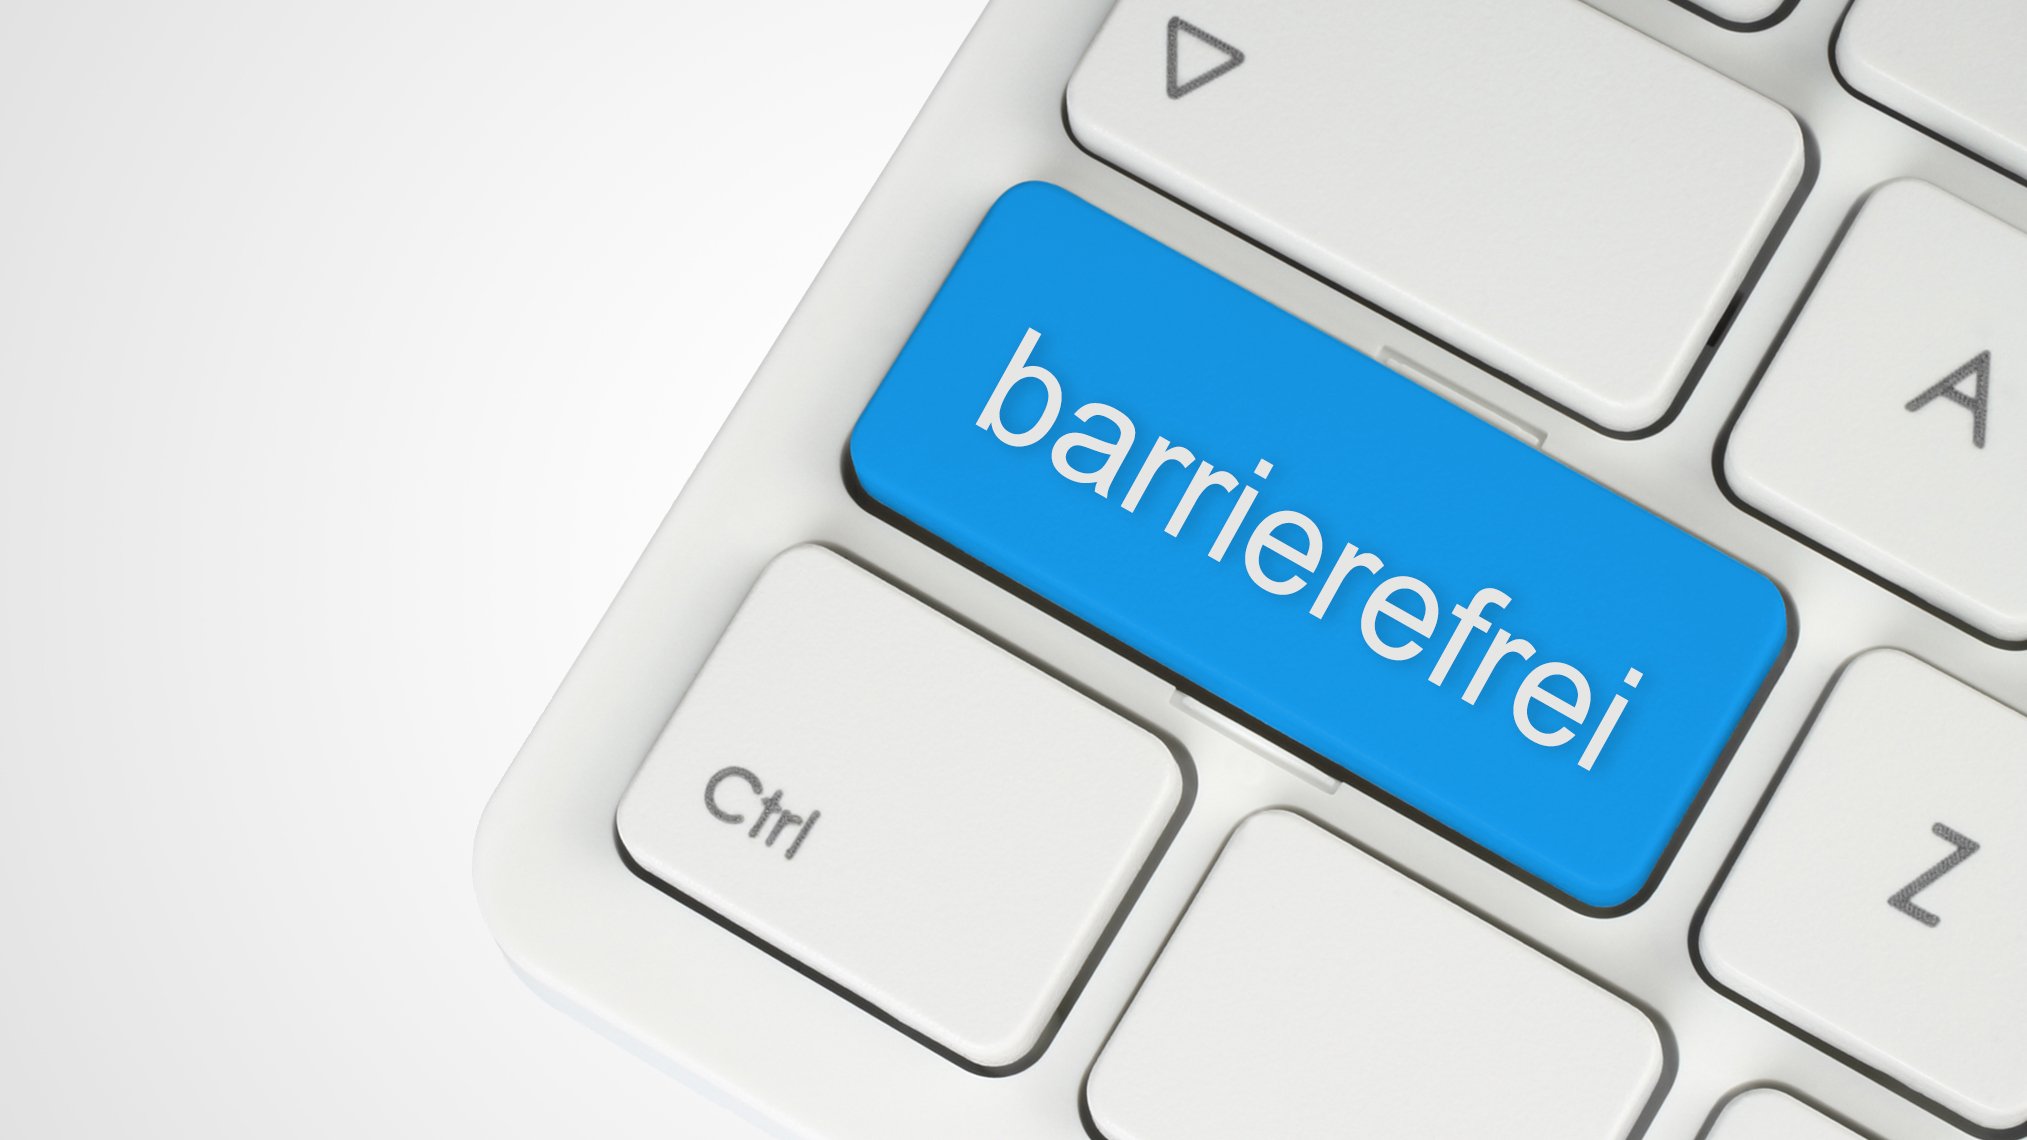 Tastatur mit blauer Taste und der Aufschrift "barrierefrei"